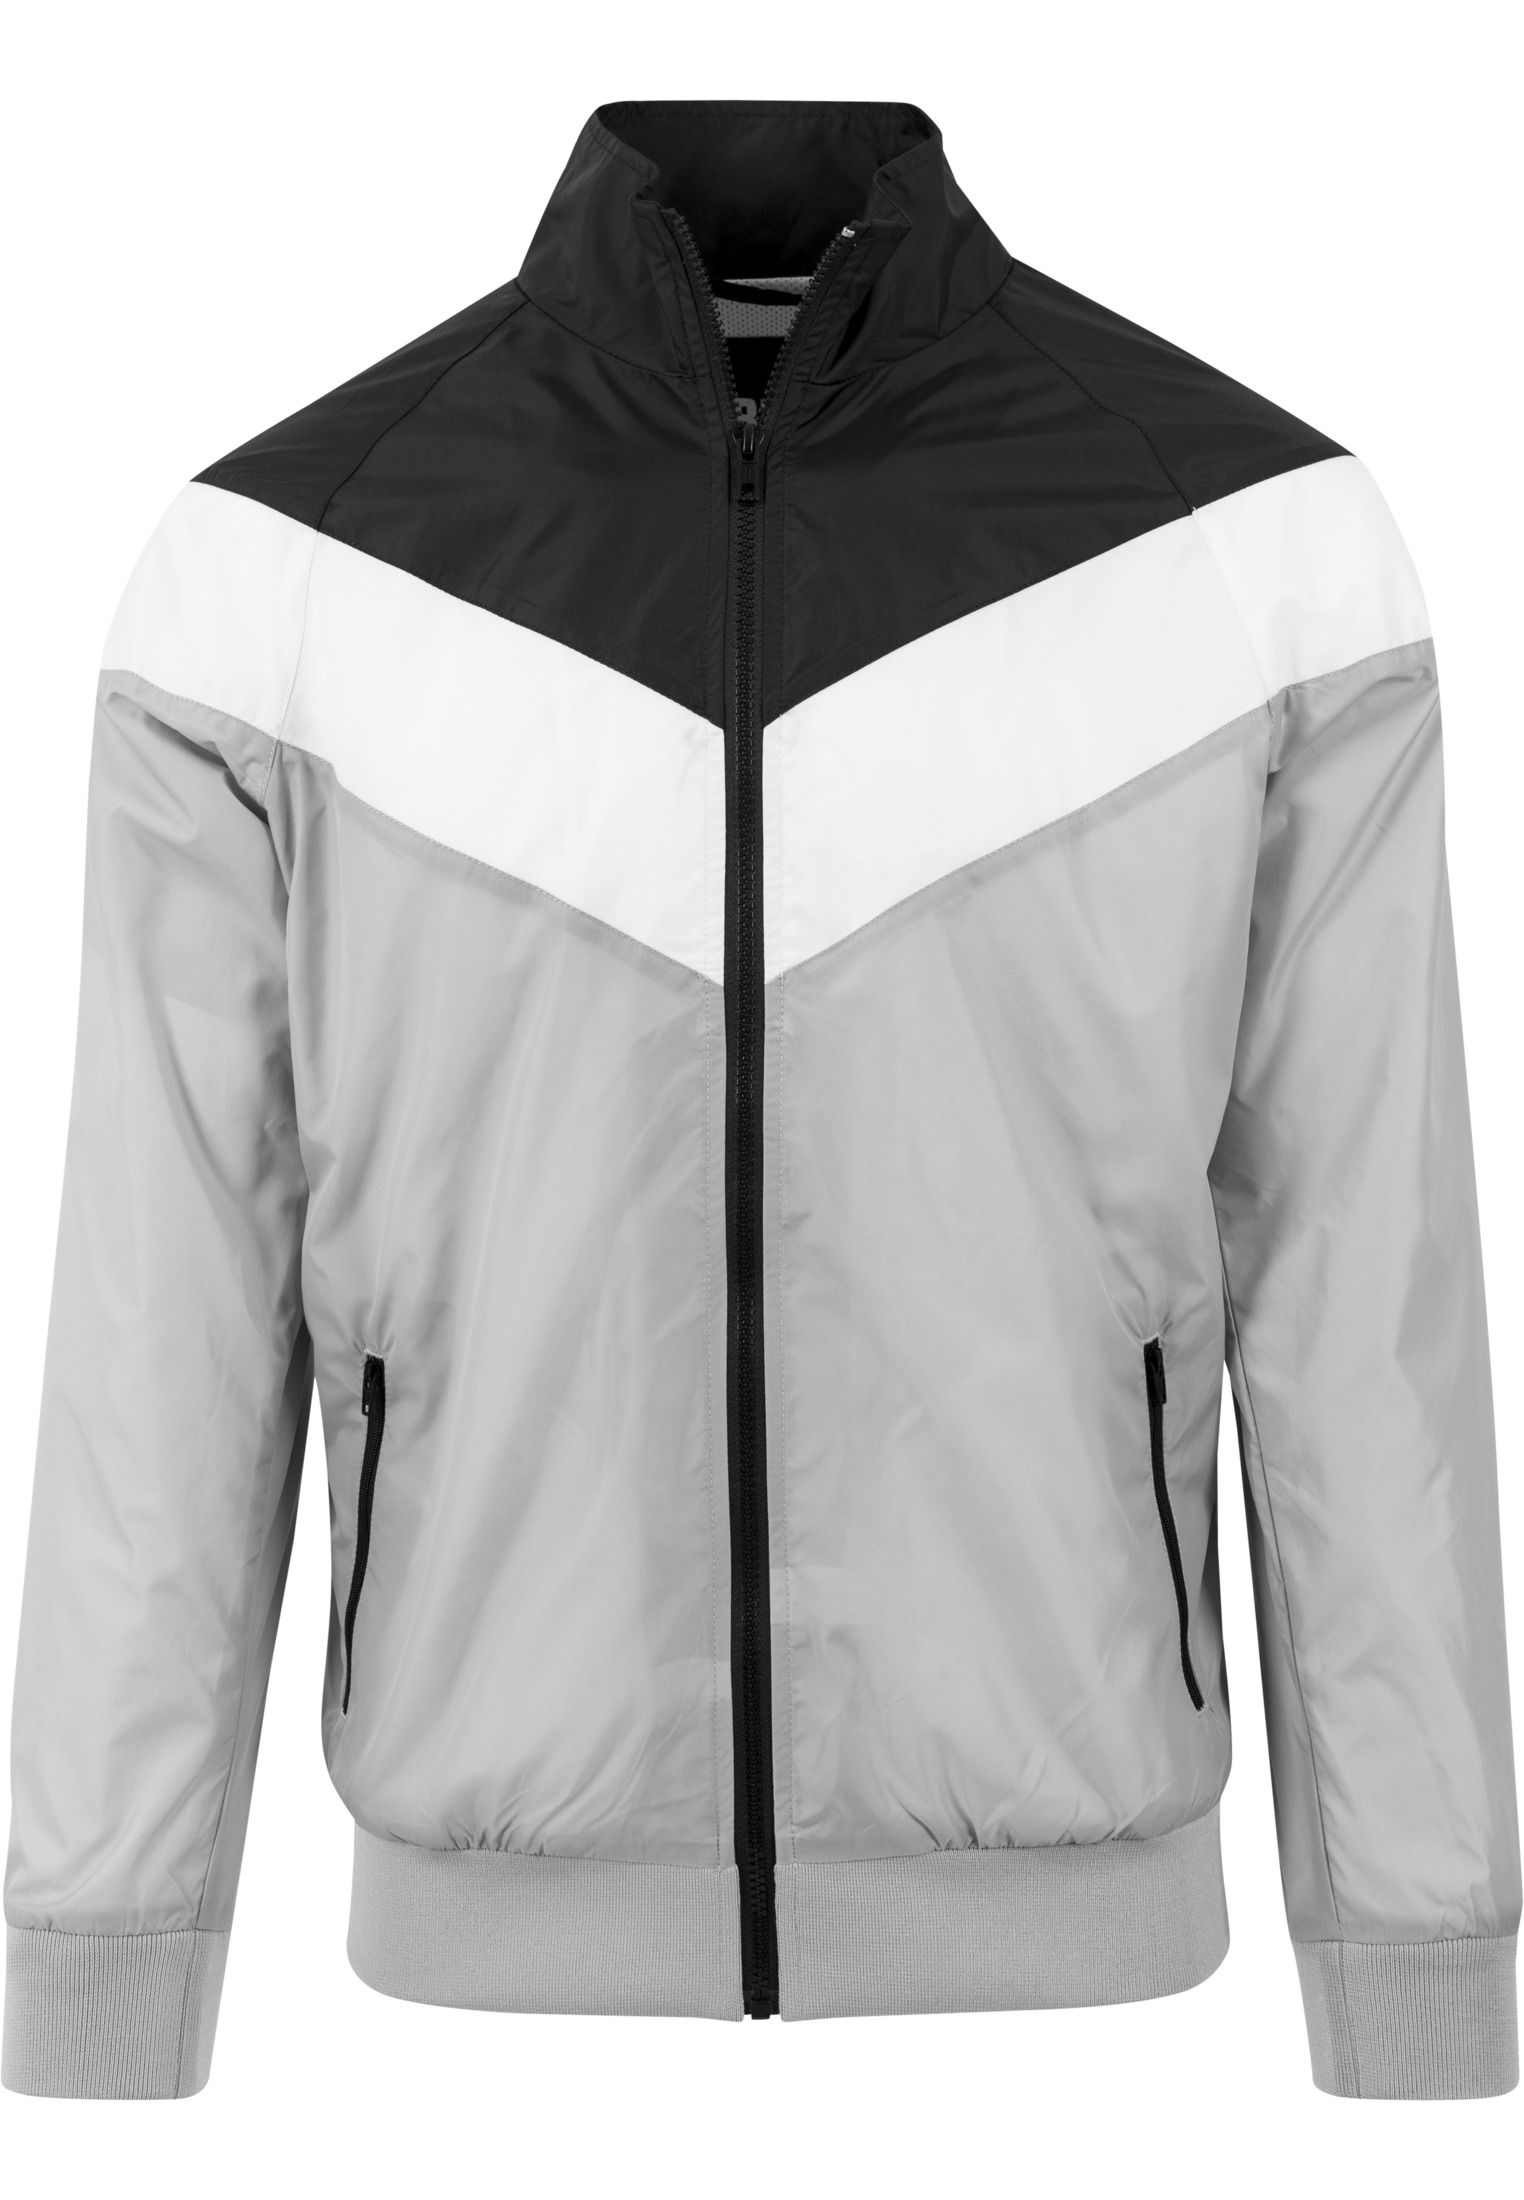 Leichte Jacken Arrow Zip Jacket in Farbe lightgrey/blk/wht